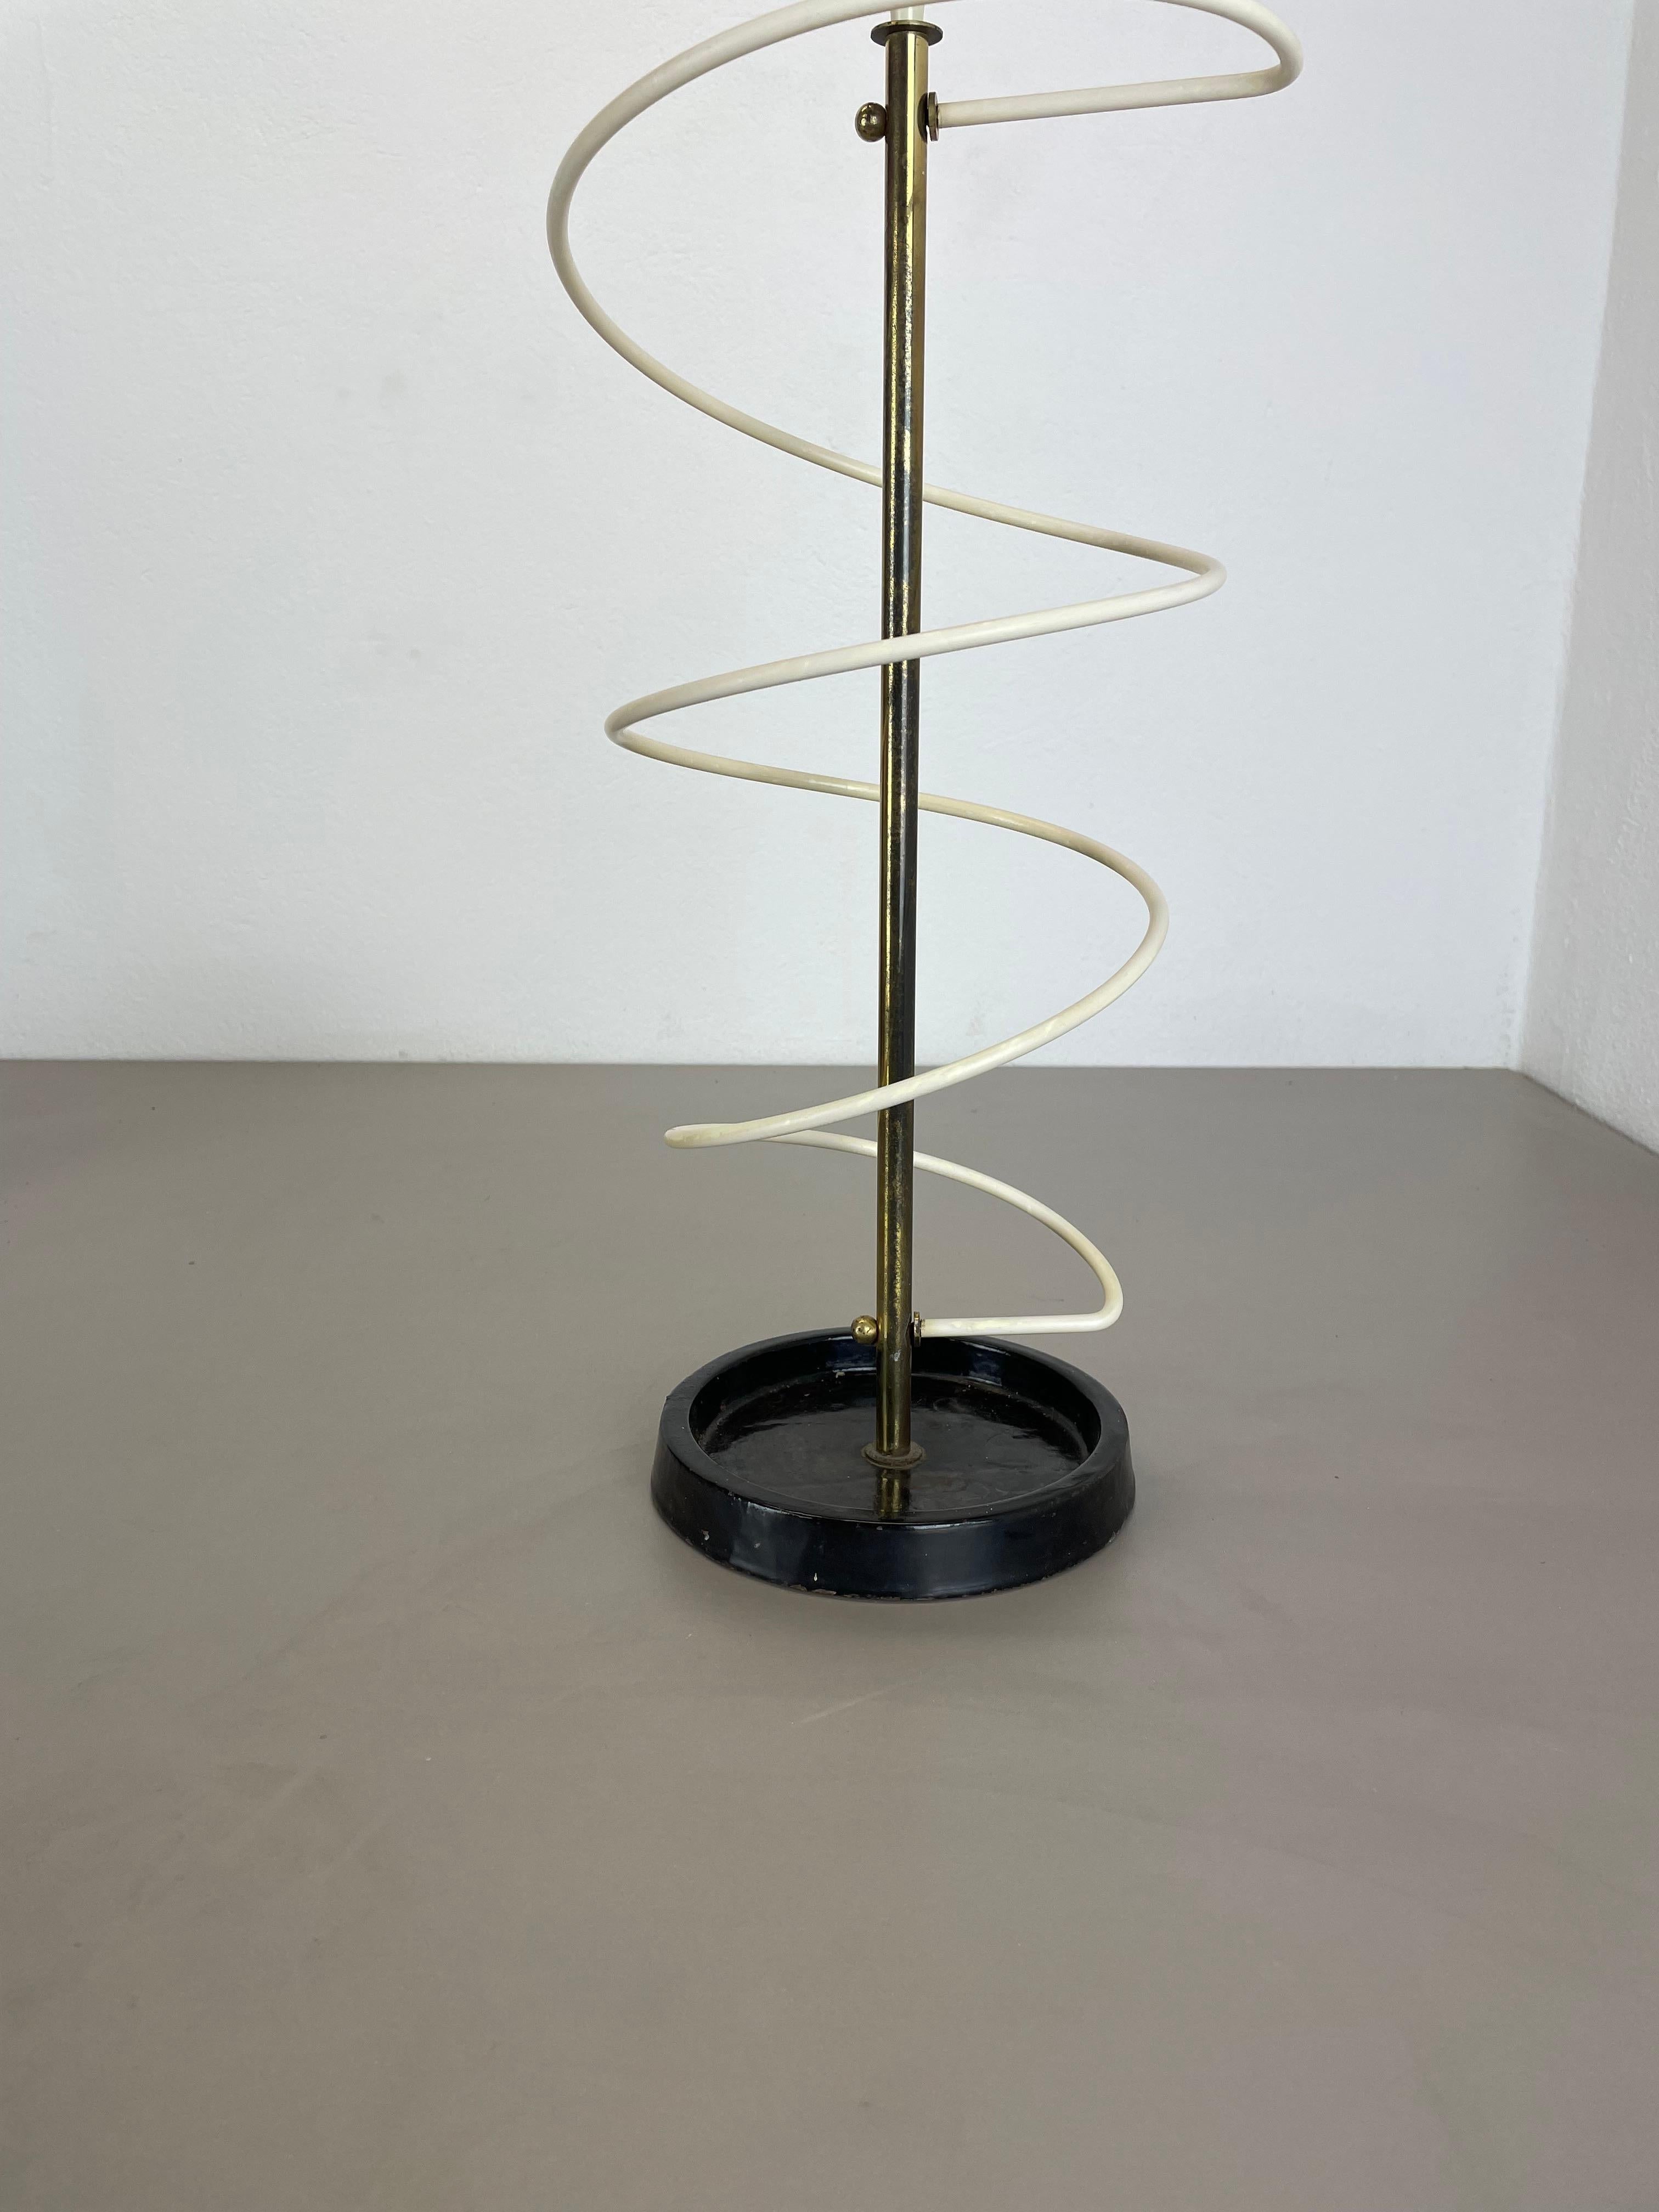 Mid-Century Modern looped form Metal Brass Umbrella Stand by Vereinigte Werkstätten, Germany 1950s